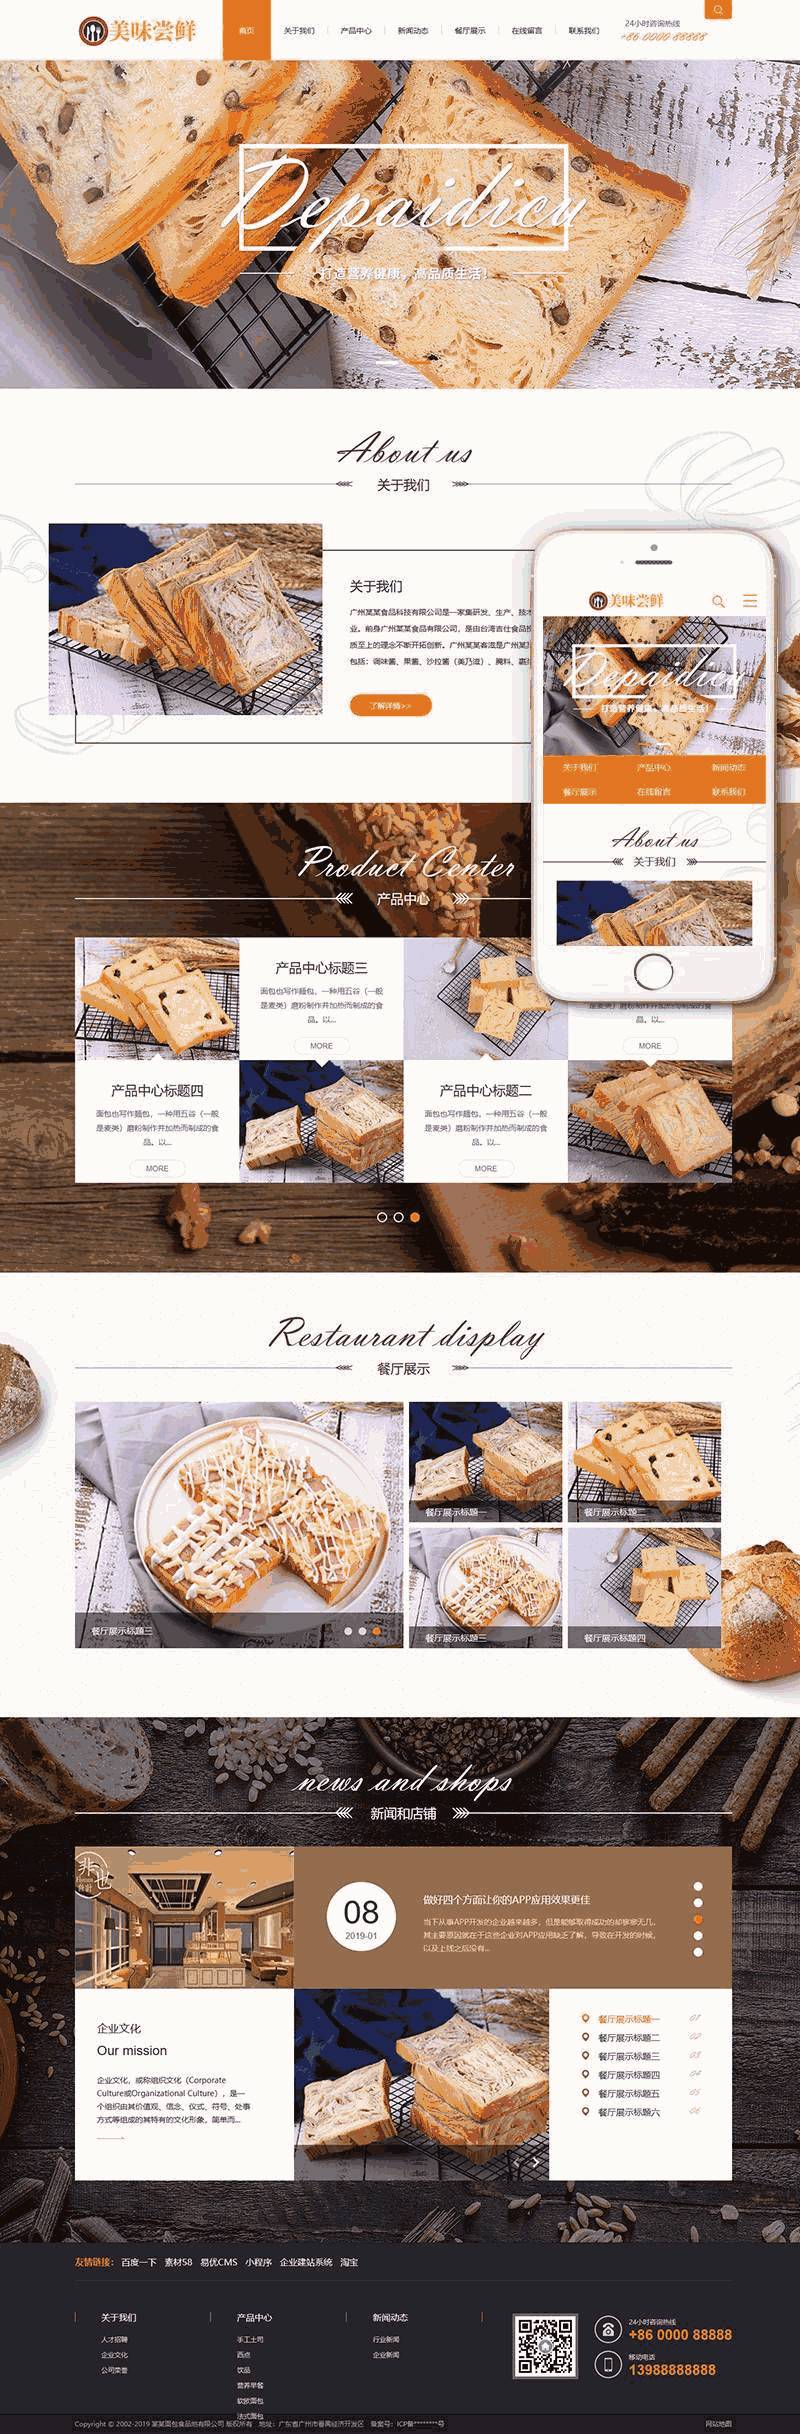 蛋糕面包食品WordPress模板主题演示图